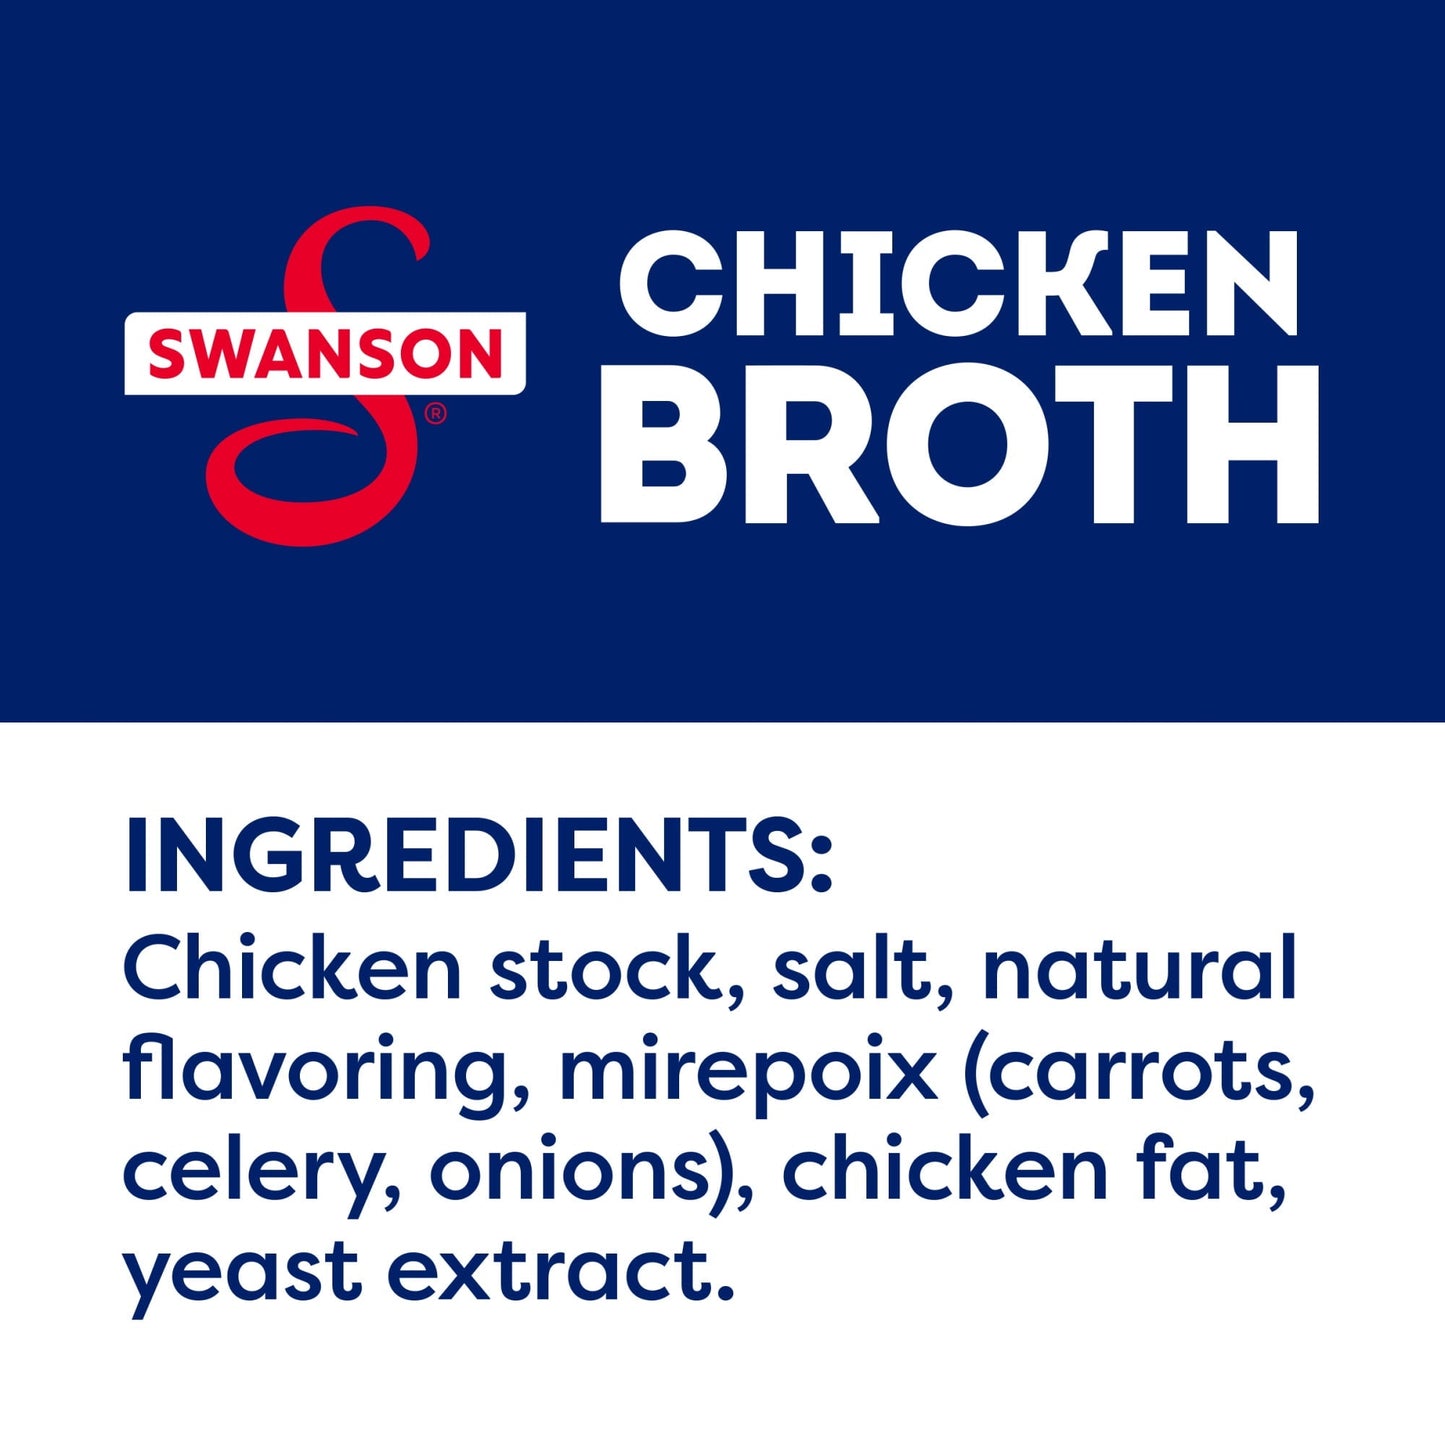 Swanson 100% Natural, Gluten-Free Chicken Broth, 14.5 oz Can